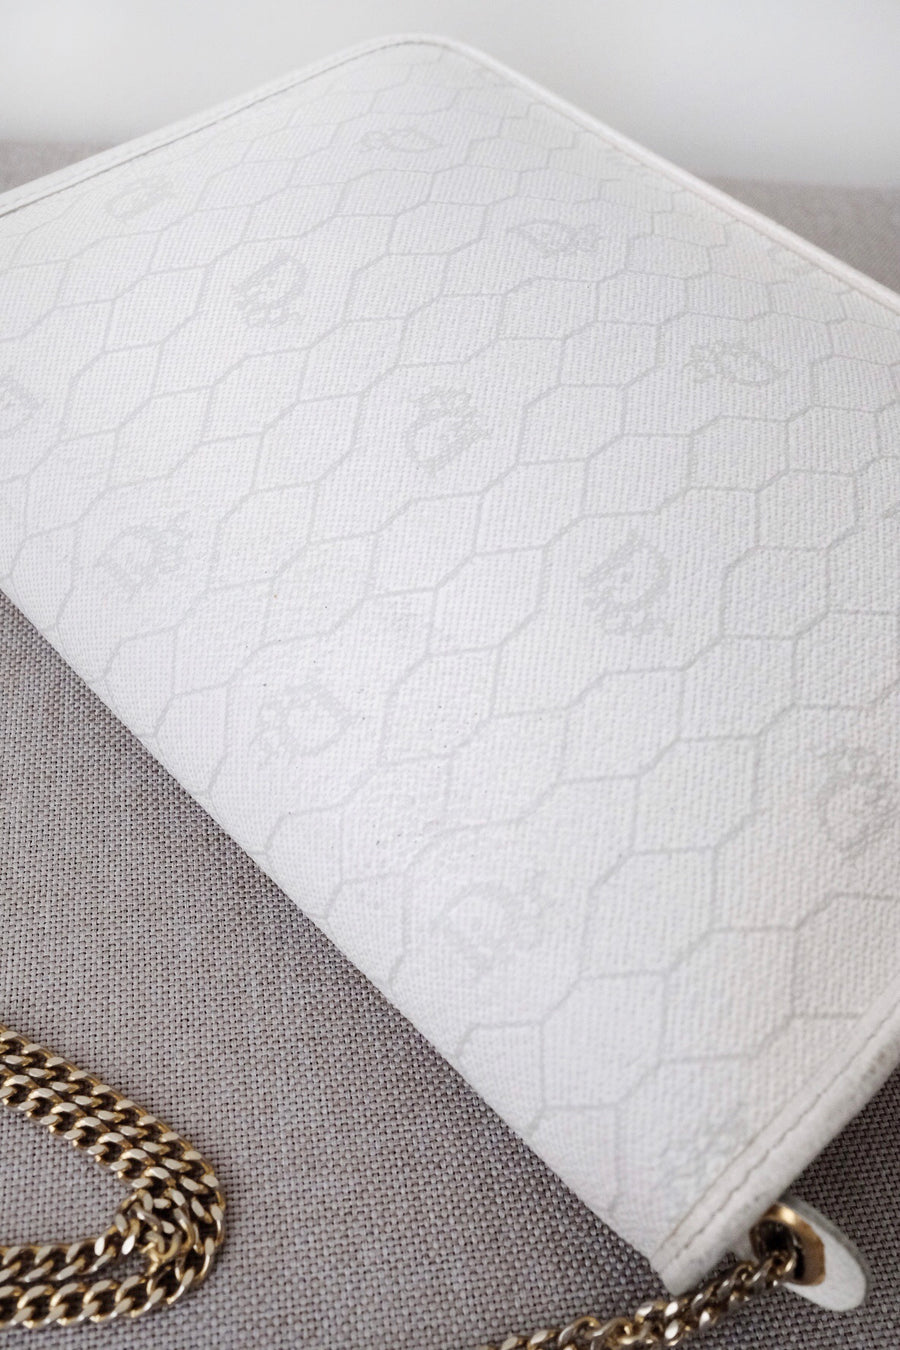 Dior vintage honeycomb pvc chain shoulder bag